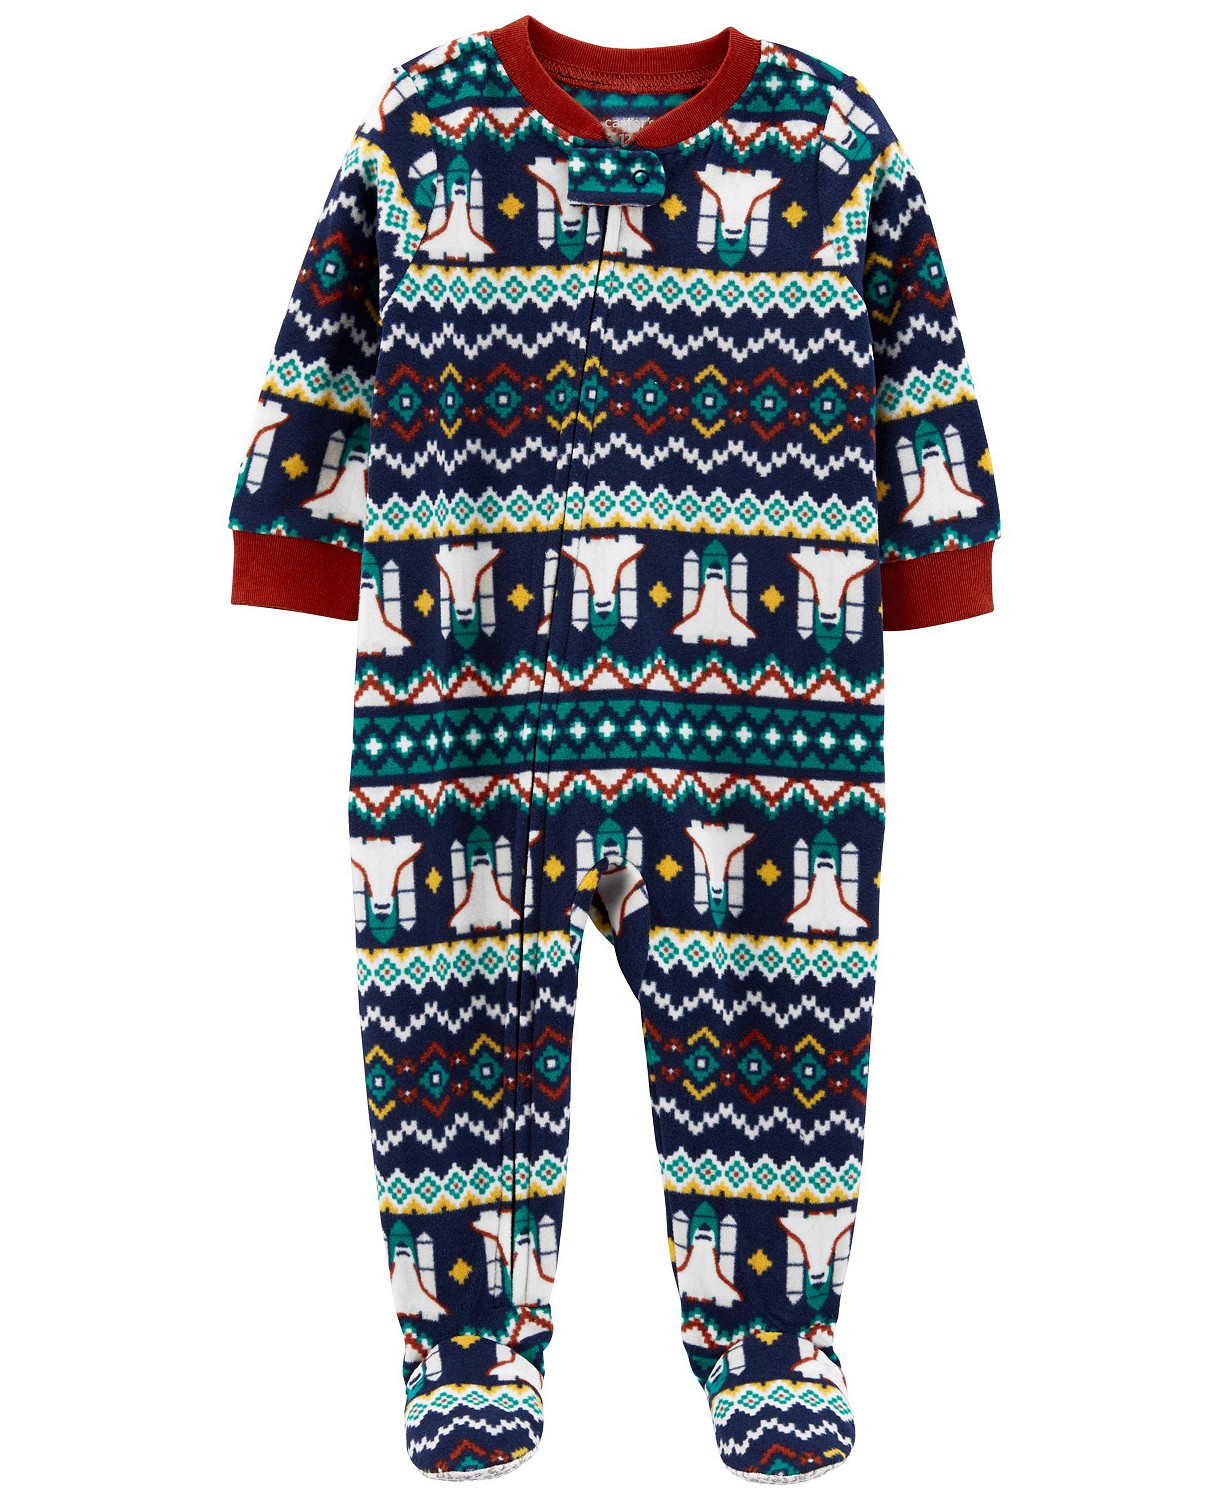 Toddler Boys One-Piece Fair Isle Fleece Footie Pajamas